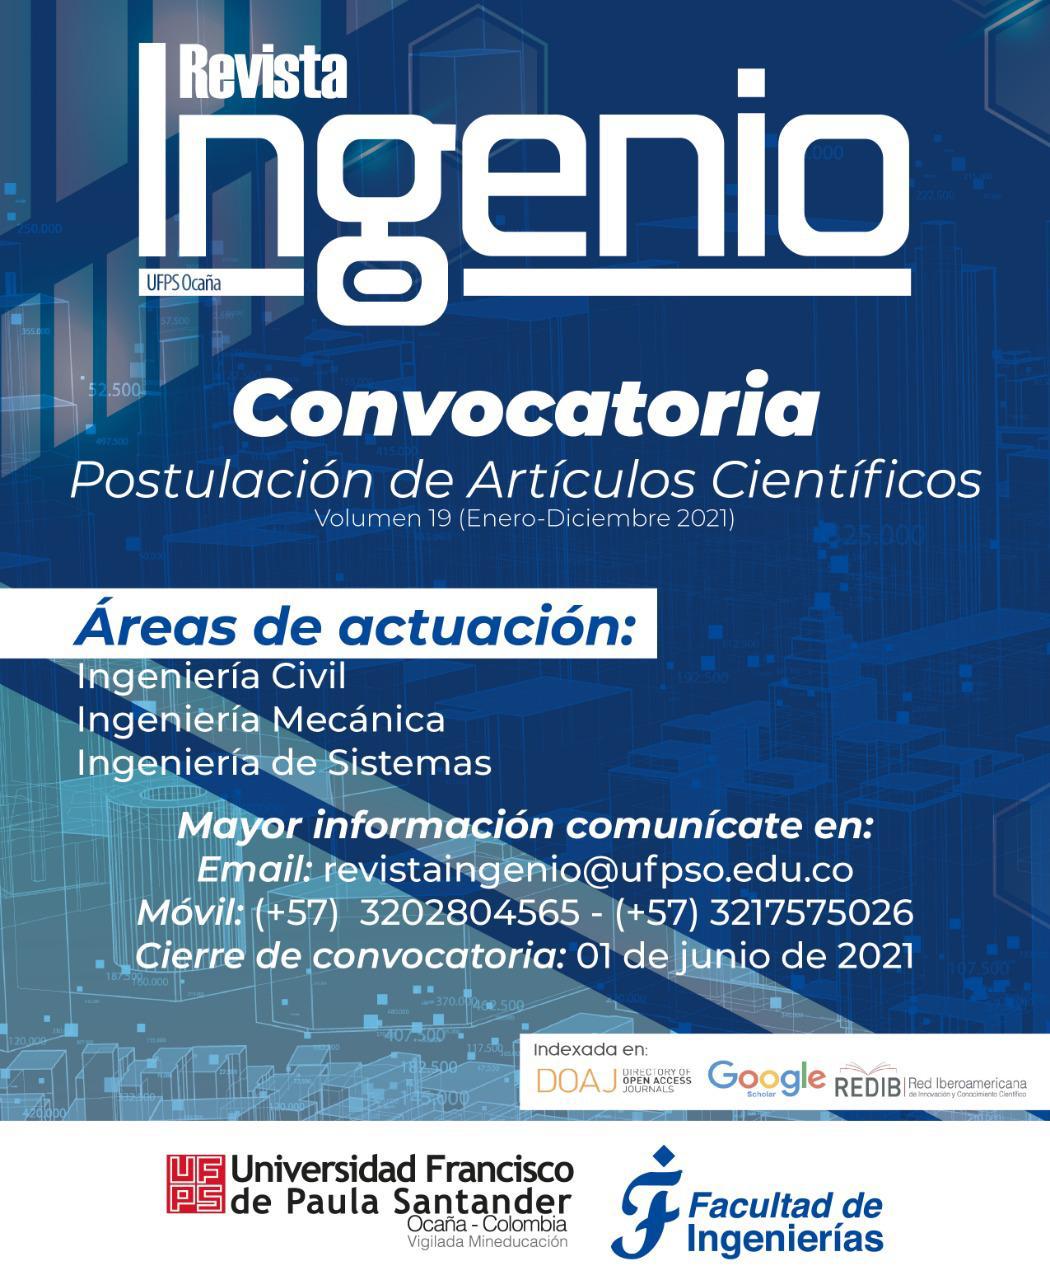 Revista Ingenio Convocatoria UFPSO